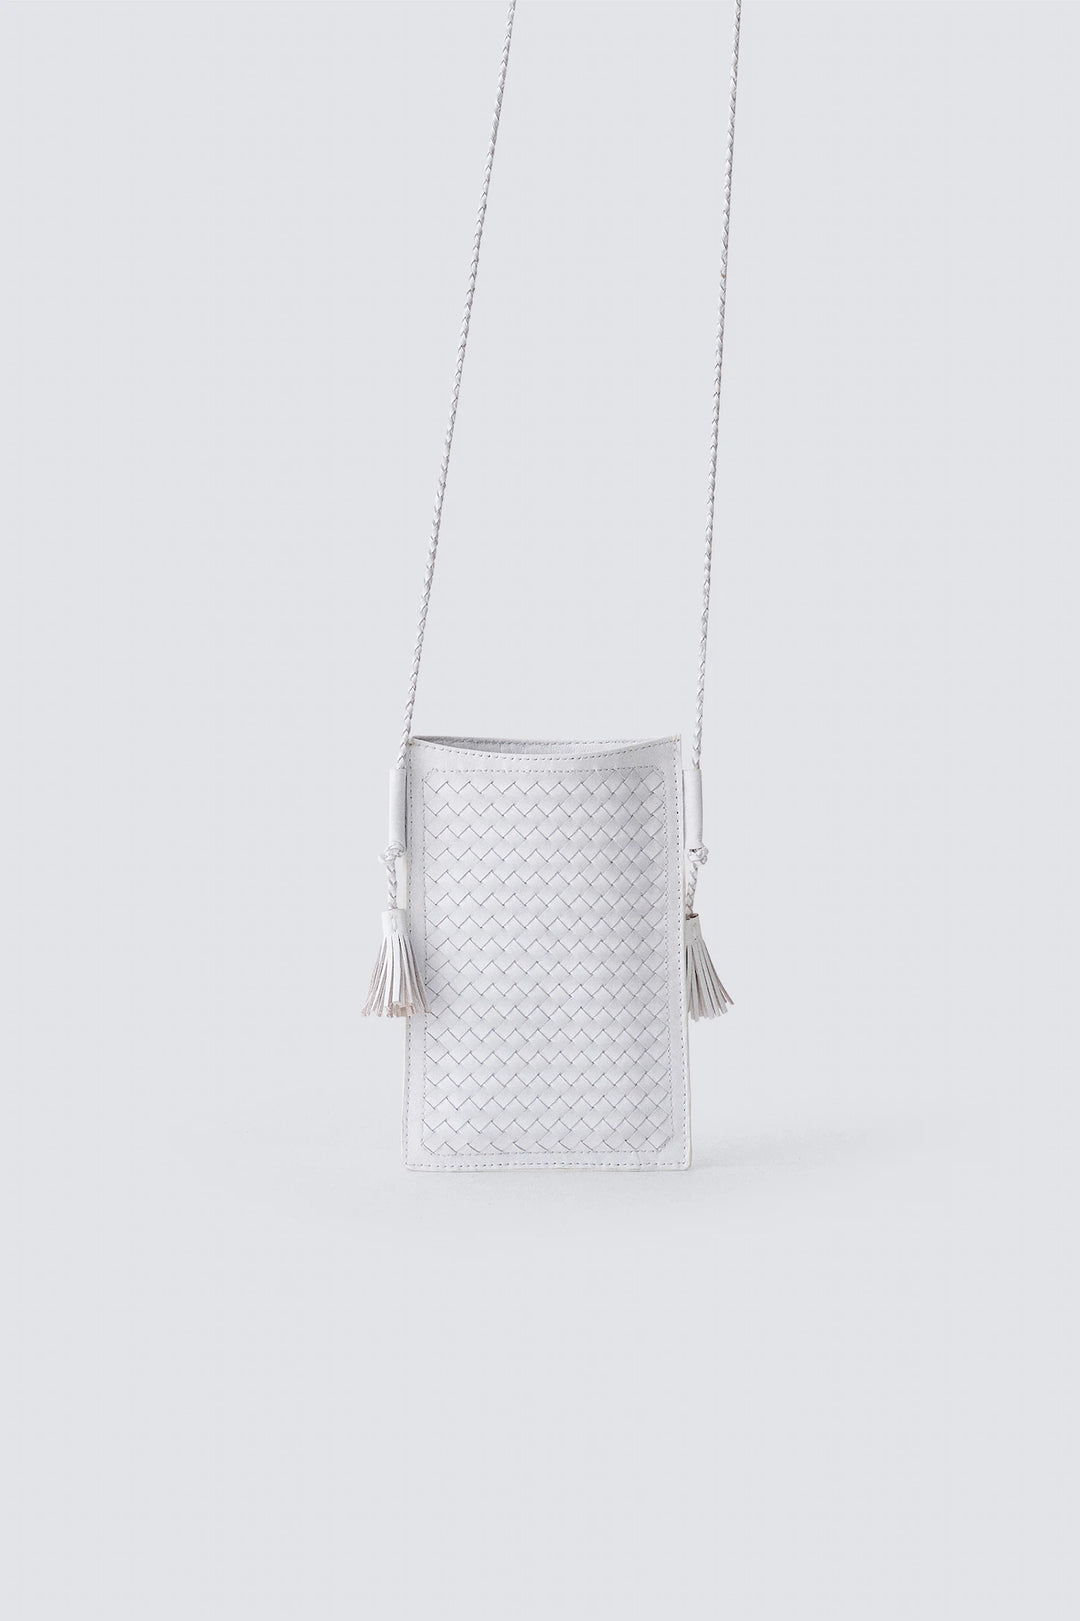 Dragon Diffusion - Pic Pocket White - Woven Leather Pochette